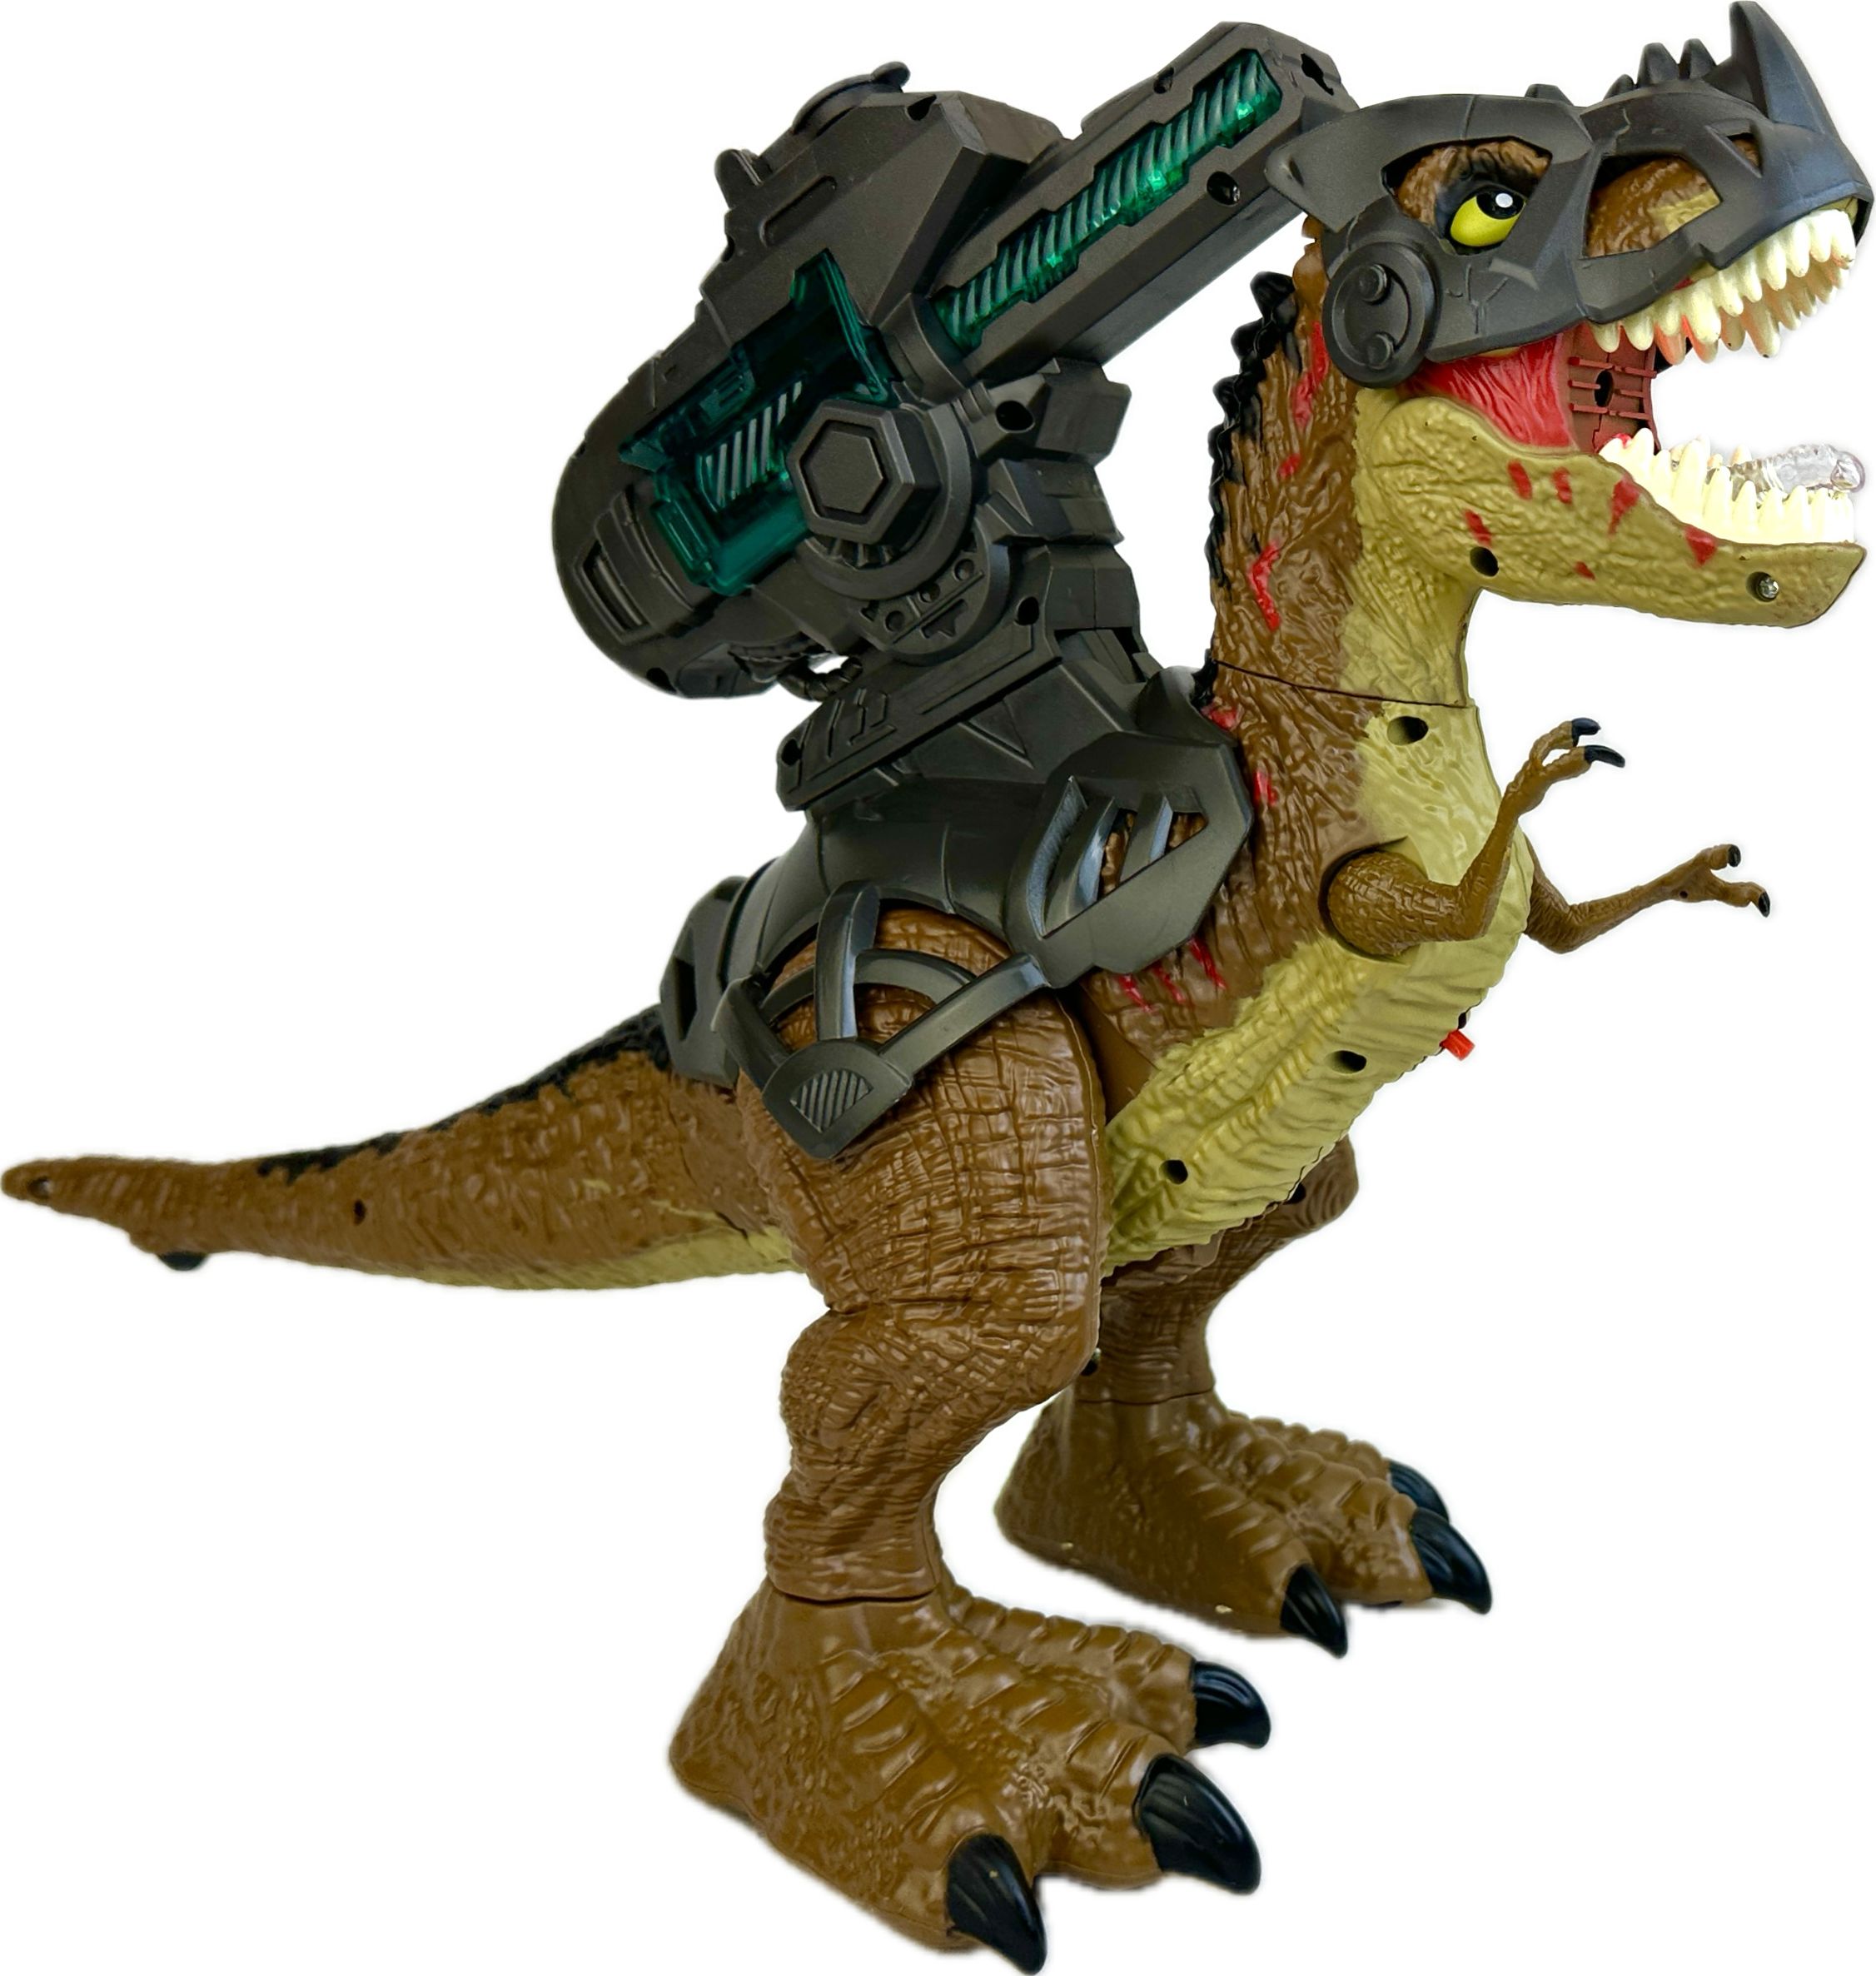 Радиоуправляемый робот Dinosaurs Island Toys динозавр Тираннозавр стреляет радиоуправляемый робот динозавр grace house на пульте управления